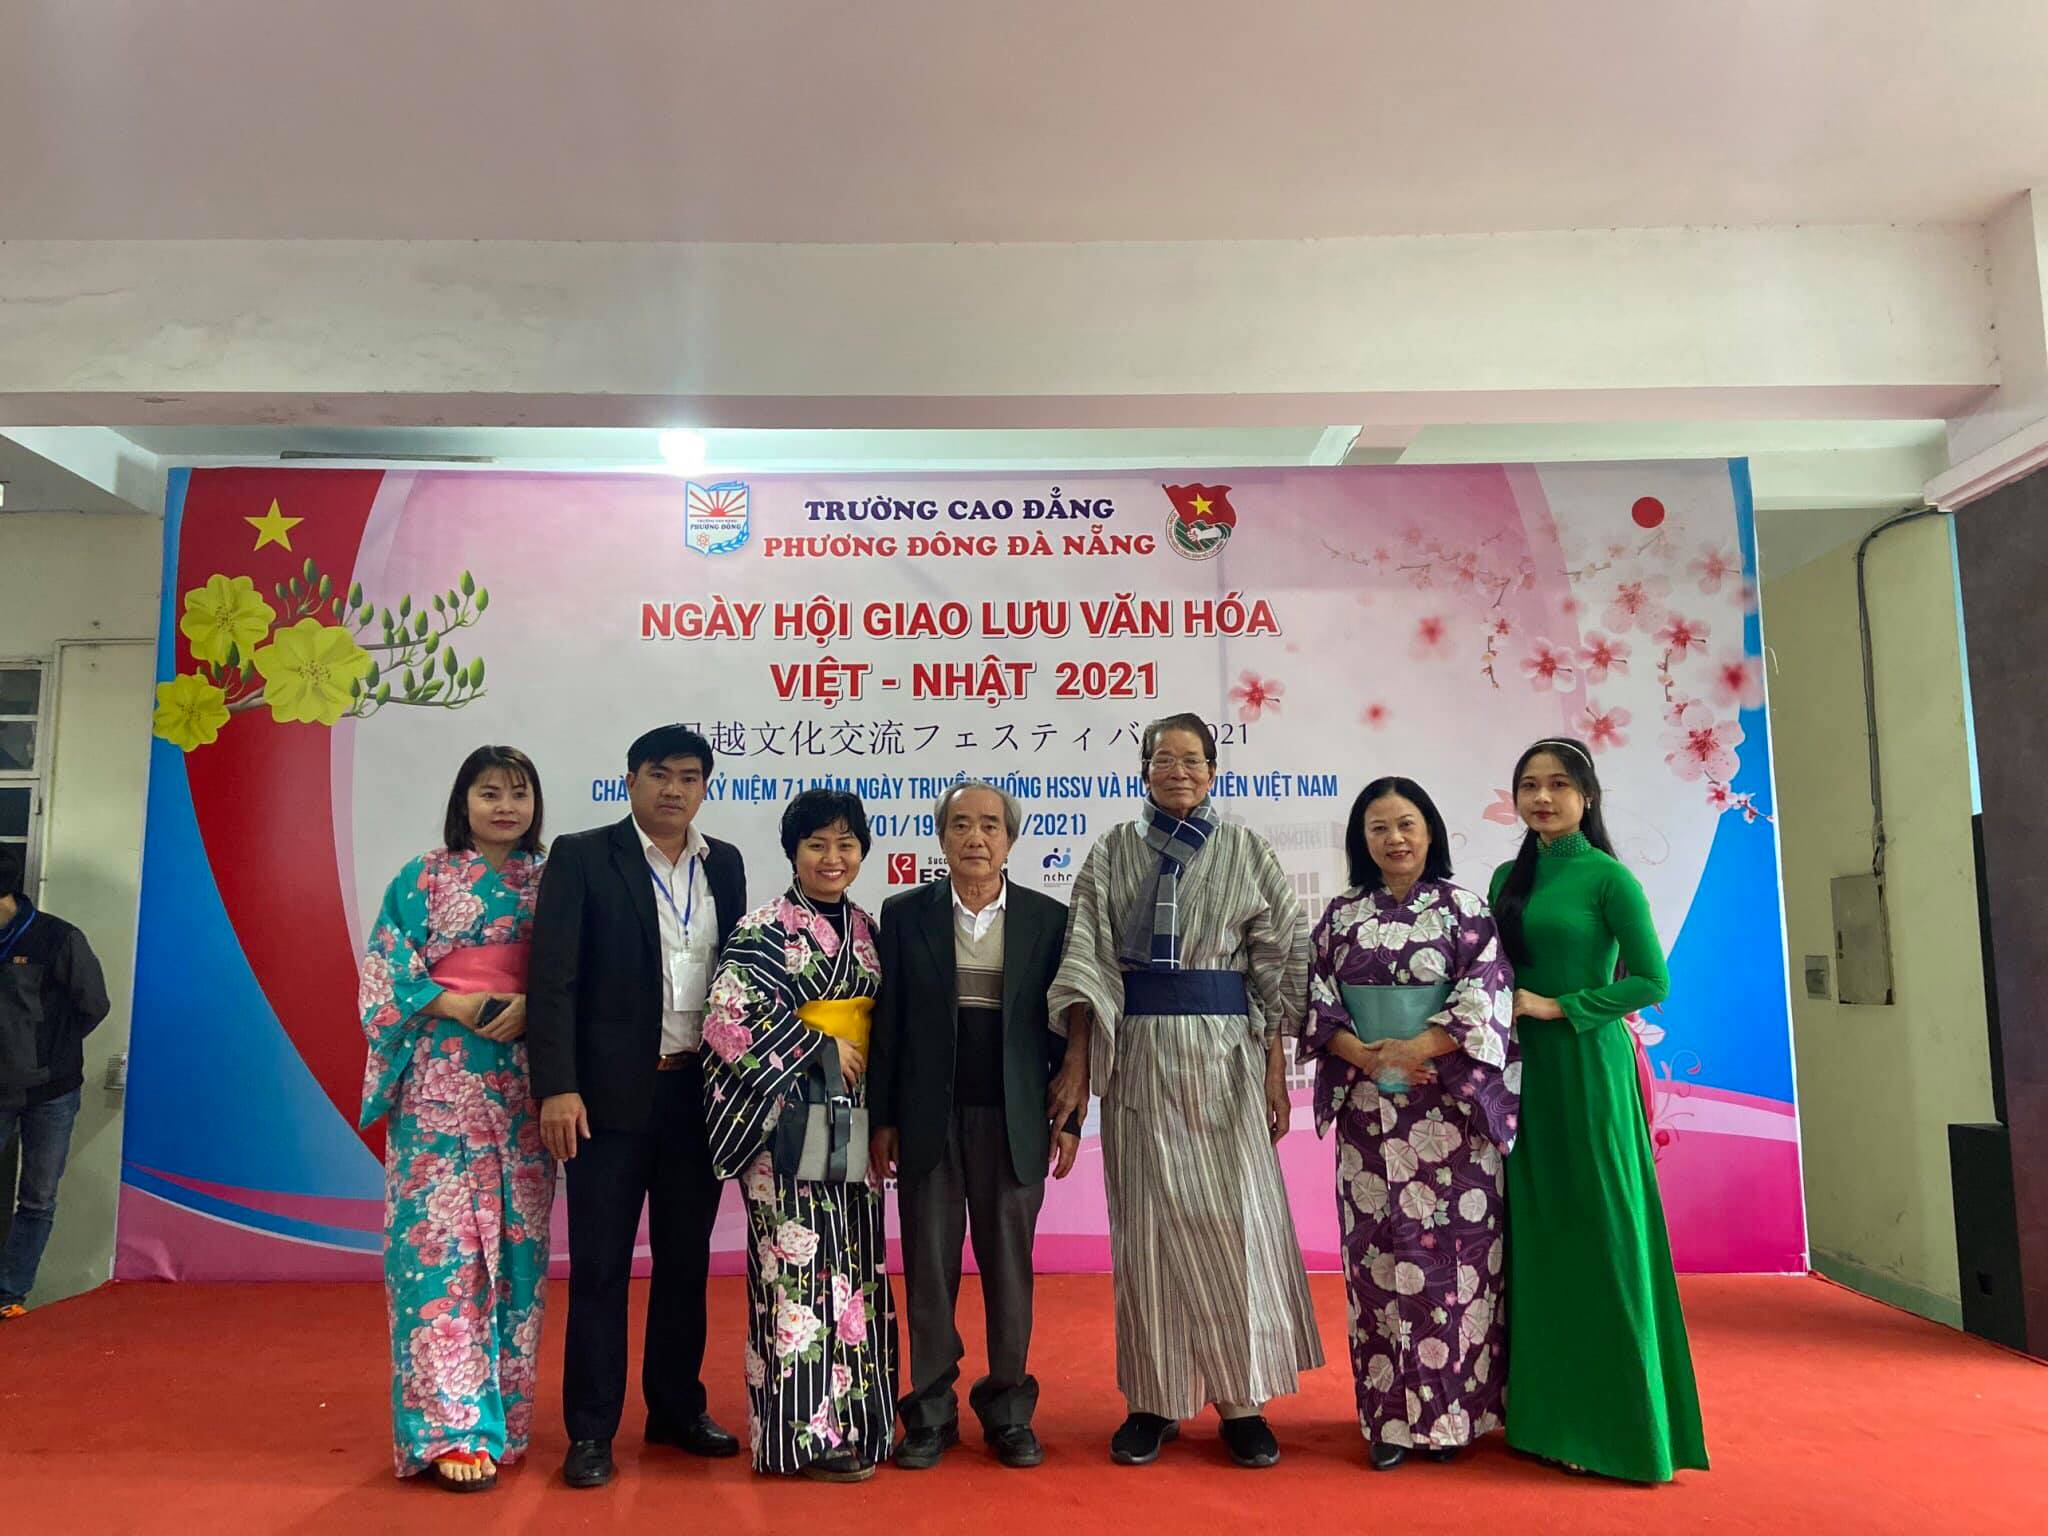 Đoàn trường Cao đẳng Phương Đông Đà Nẵng đã tổ chức chương trình Ngày hội  giao lưu văn hóa Việt – Nhật 2021 – Đoàn TNCS Hồ Chí Minh – Thành phố Đà  Nẵng